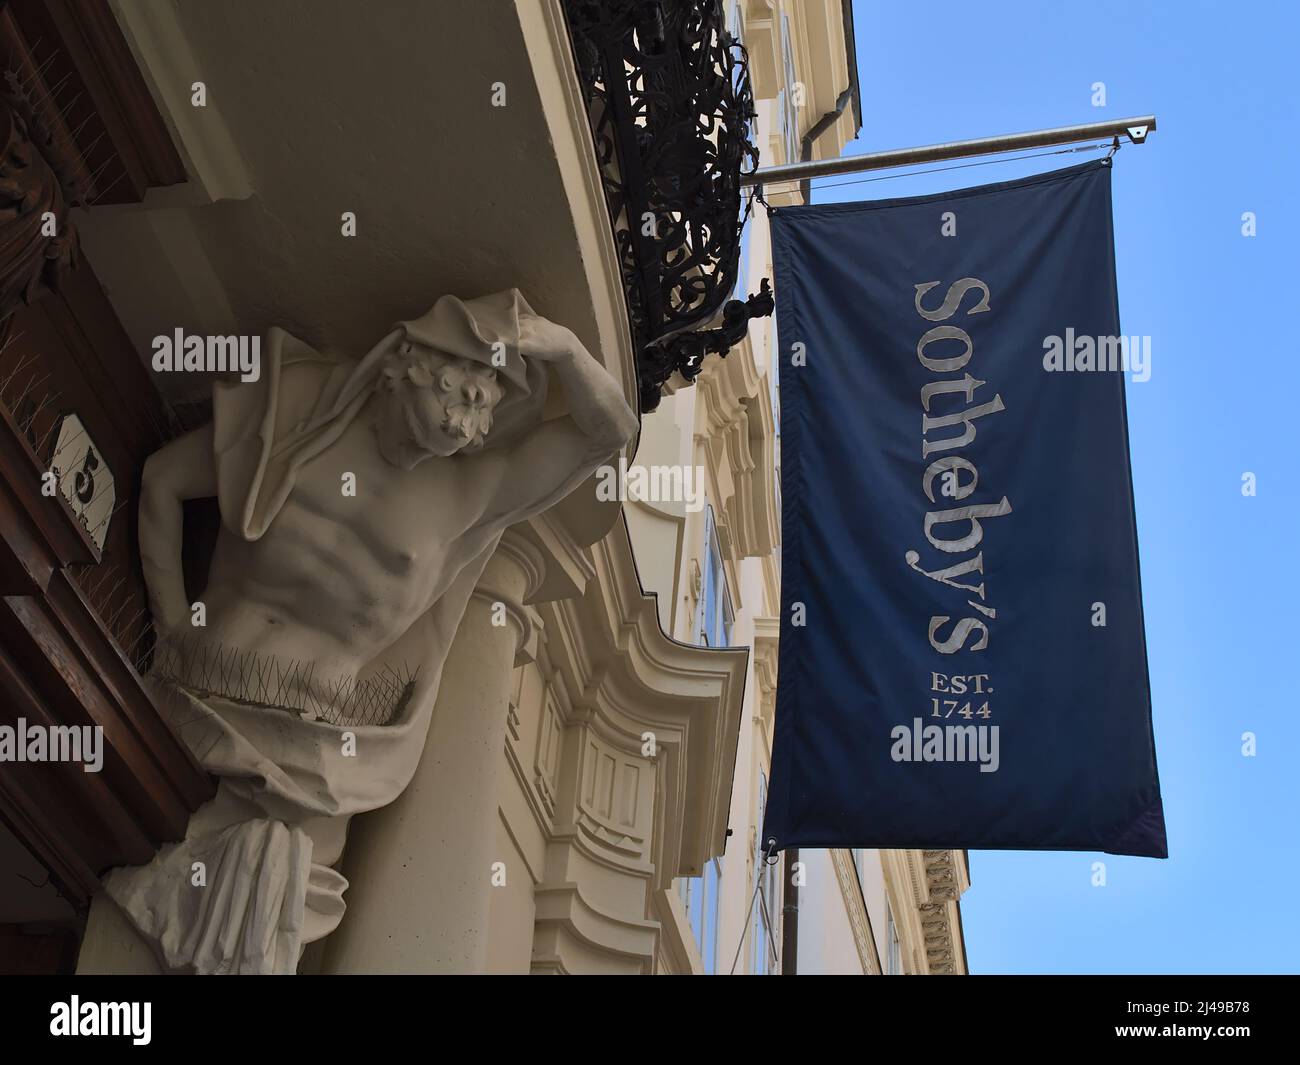 Vista en ángulo bajo de la entrada del edificio de la casa de subastas Sotheby's en el centro histórico de Viena, Austria con bandera azul con logotipo. Foto de stock